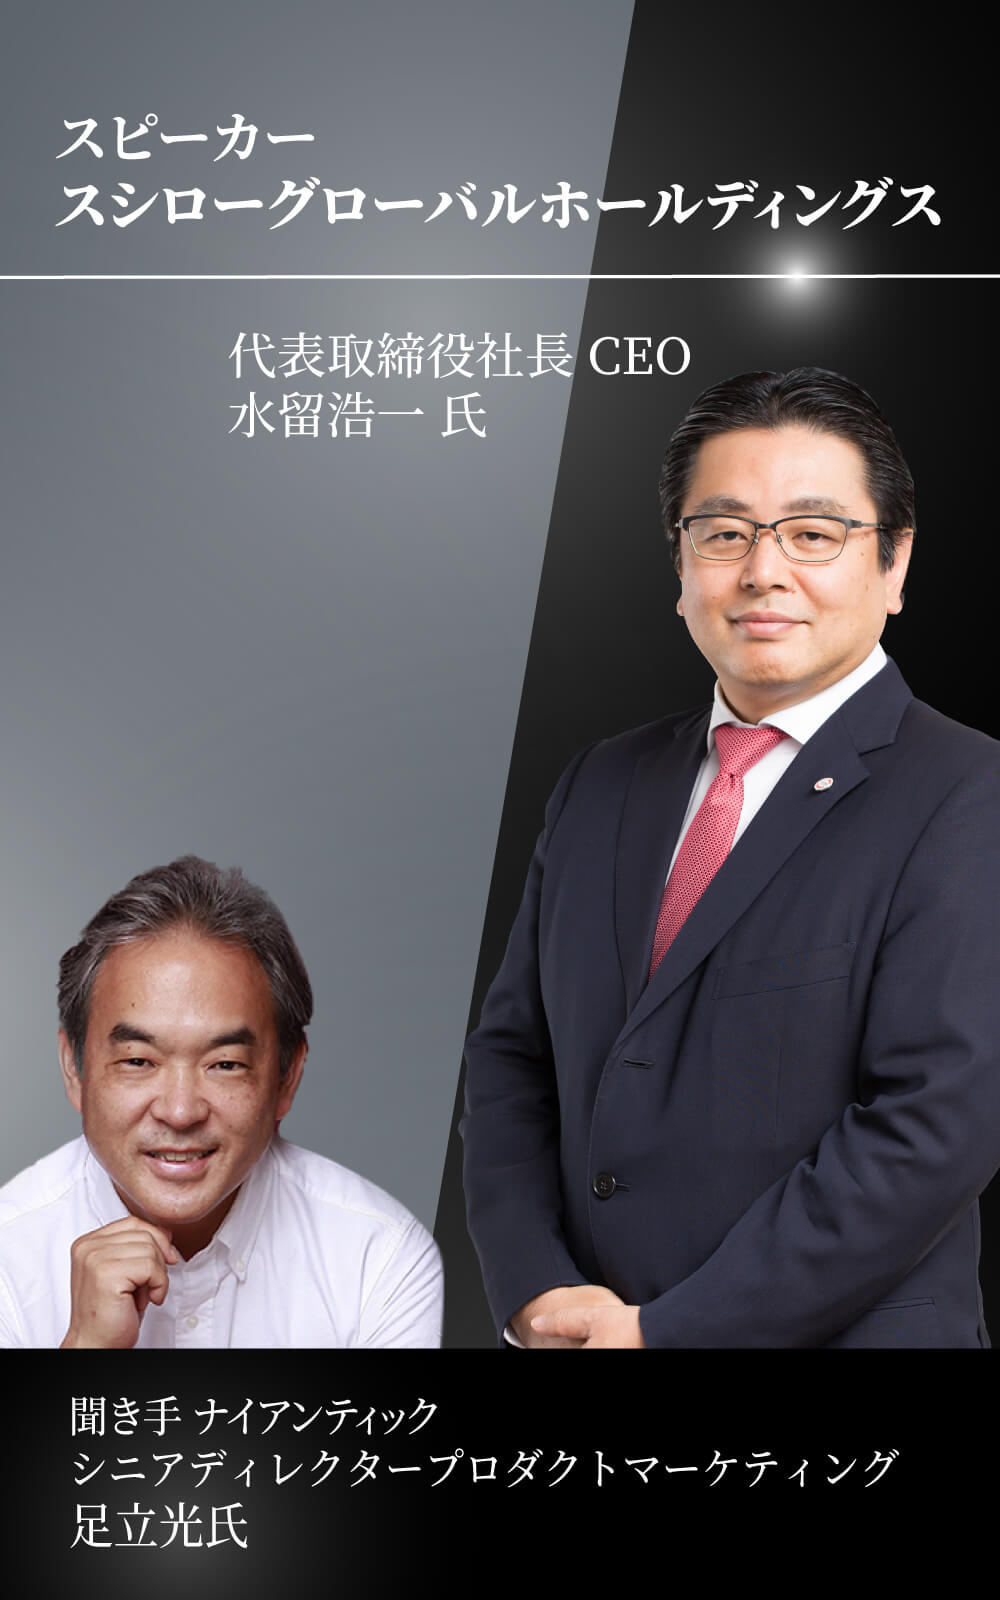 スシローグローバルホールディングス 代表取締役社長 CEO 水留浩一氏登壇決定！